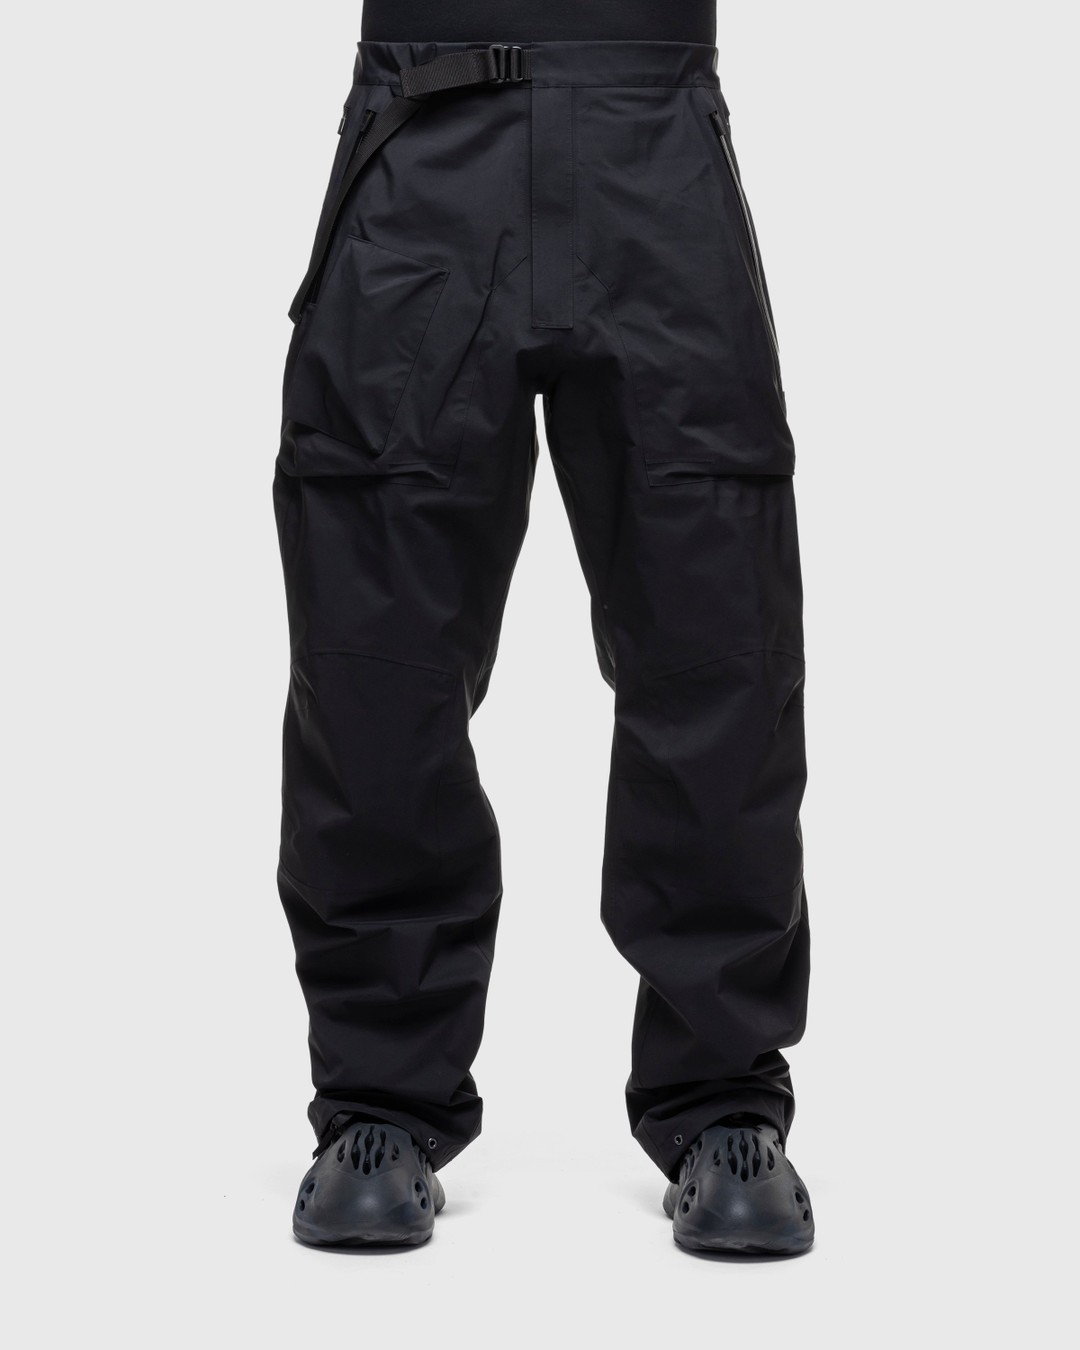 ACRONYM – P43-GT Pant Black - Active Pants - Black - Image 2